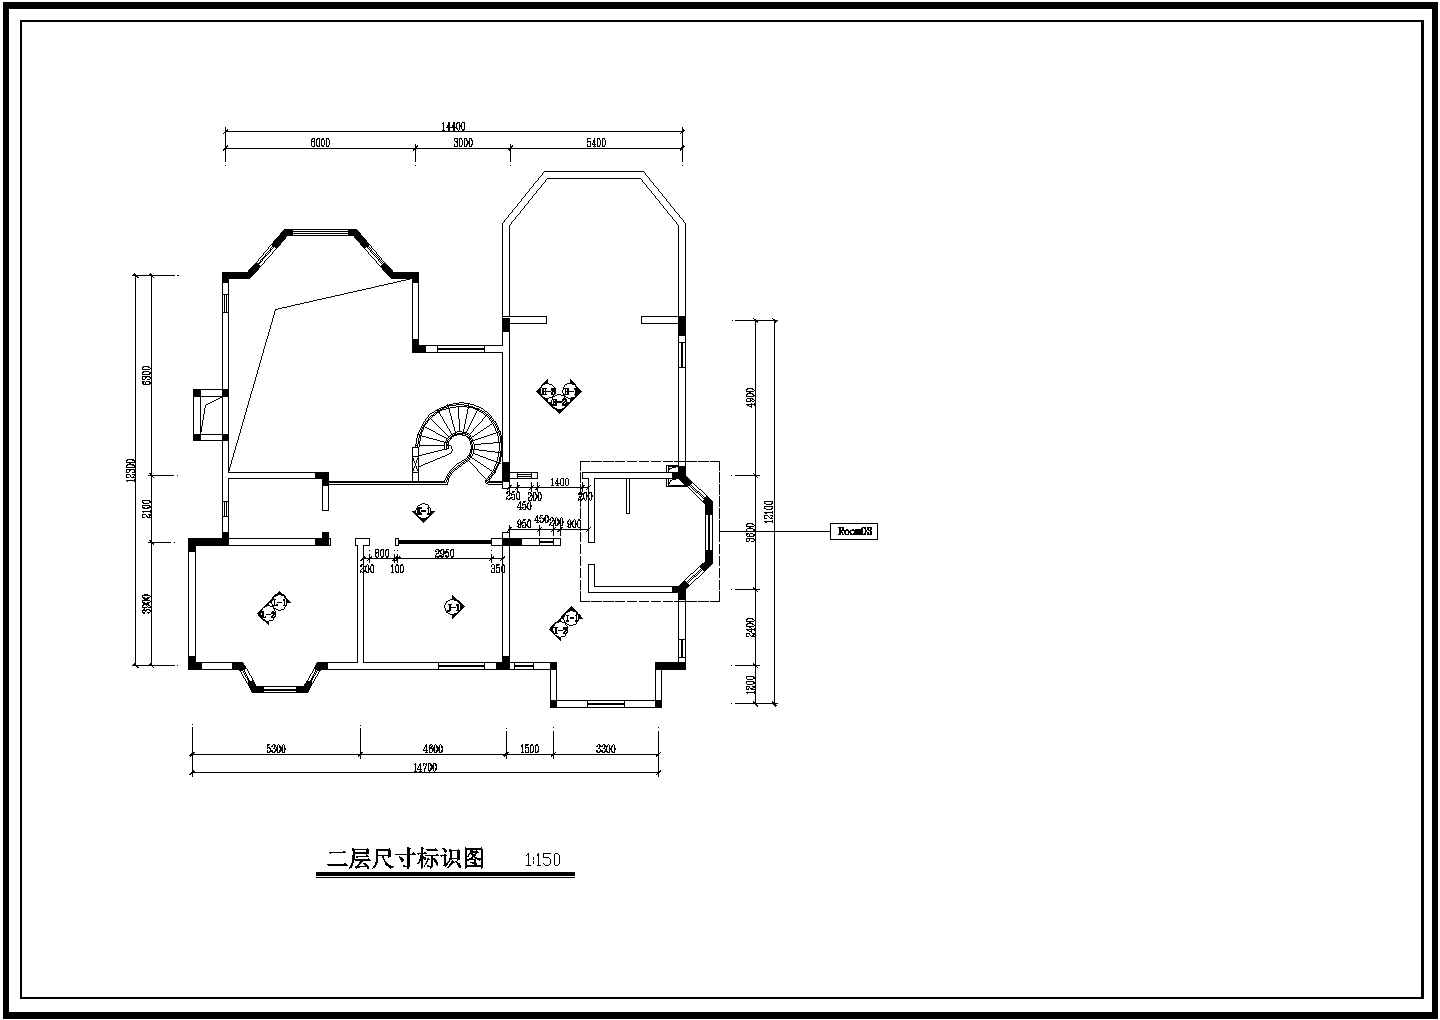 一套别墅内装饰建筑设计全套完整大样图CAD平面图